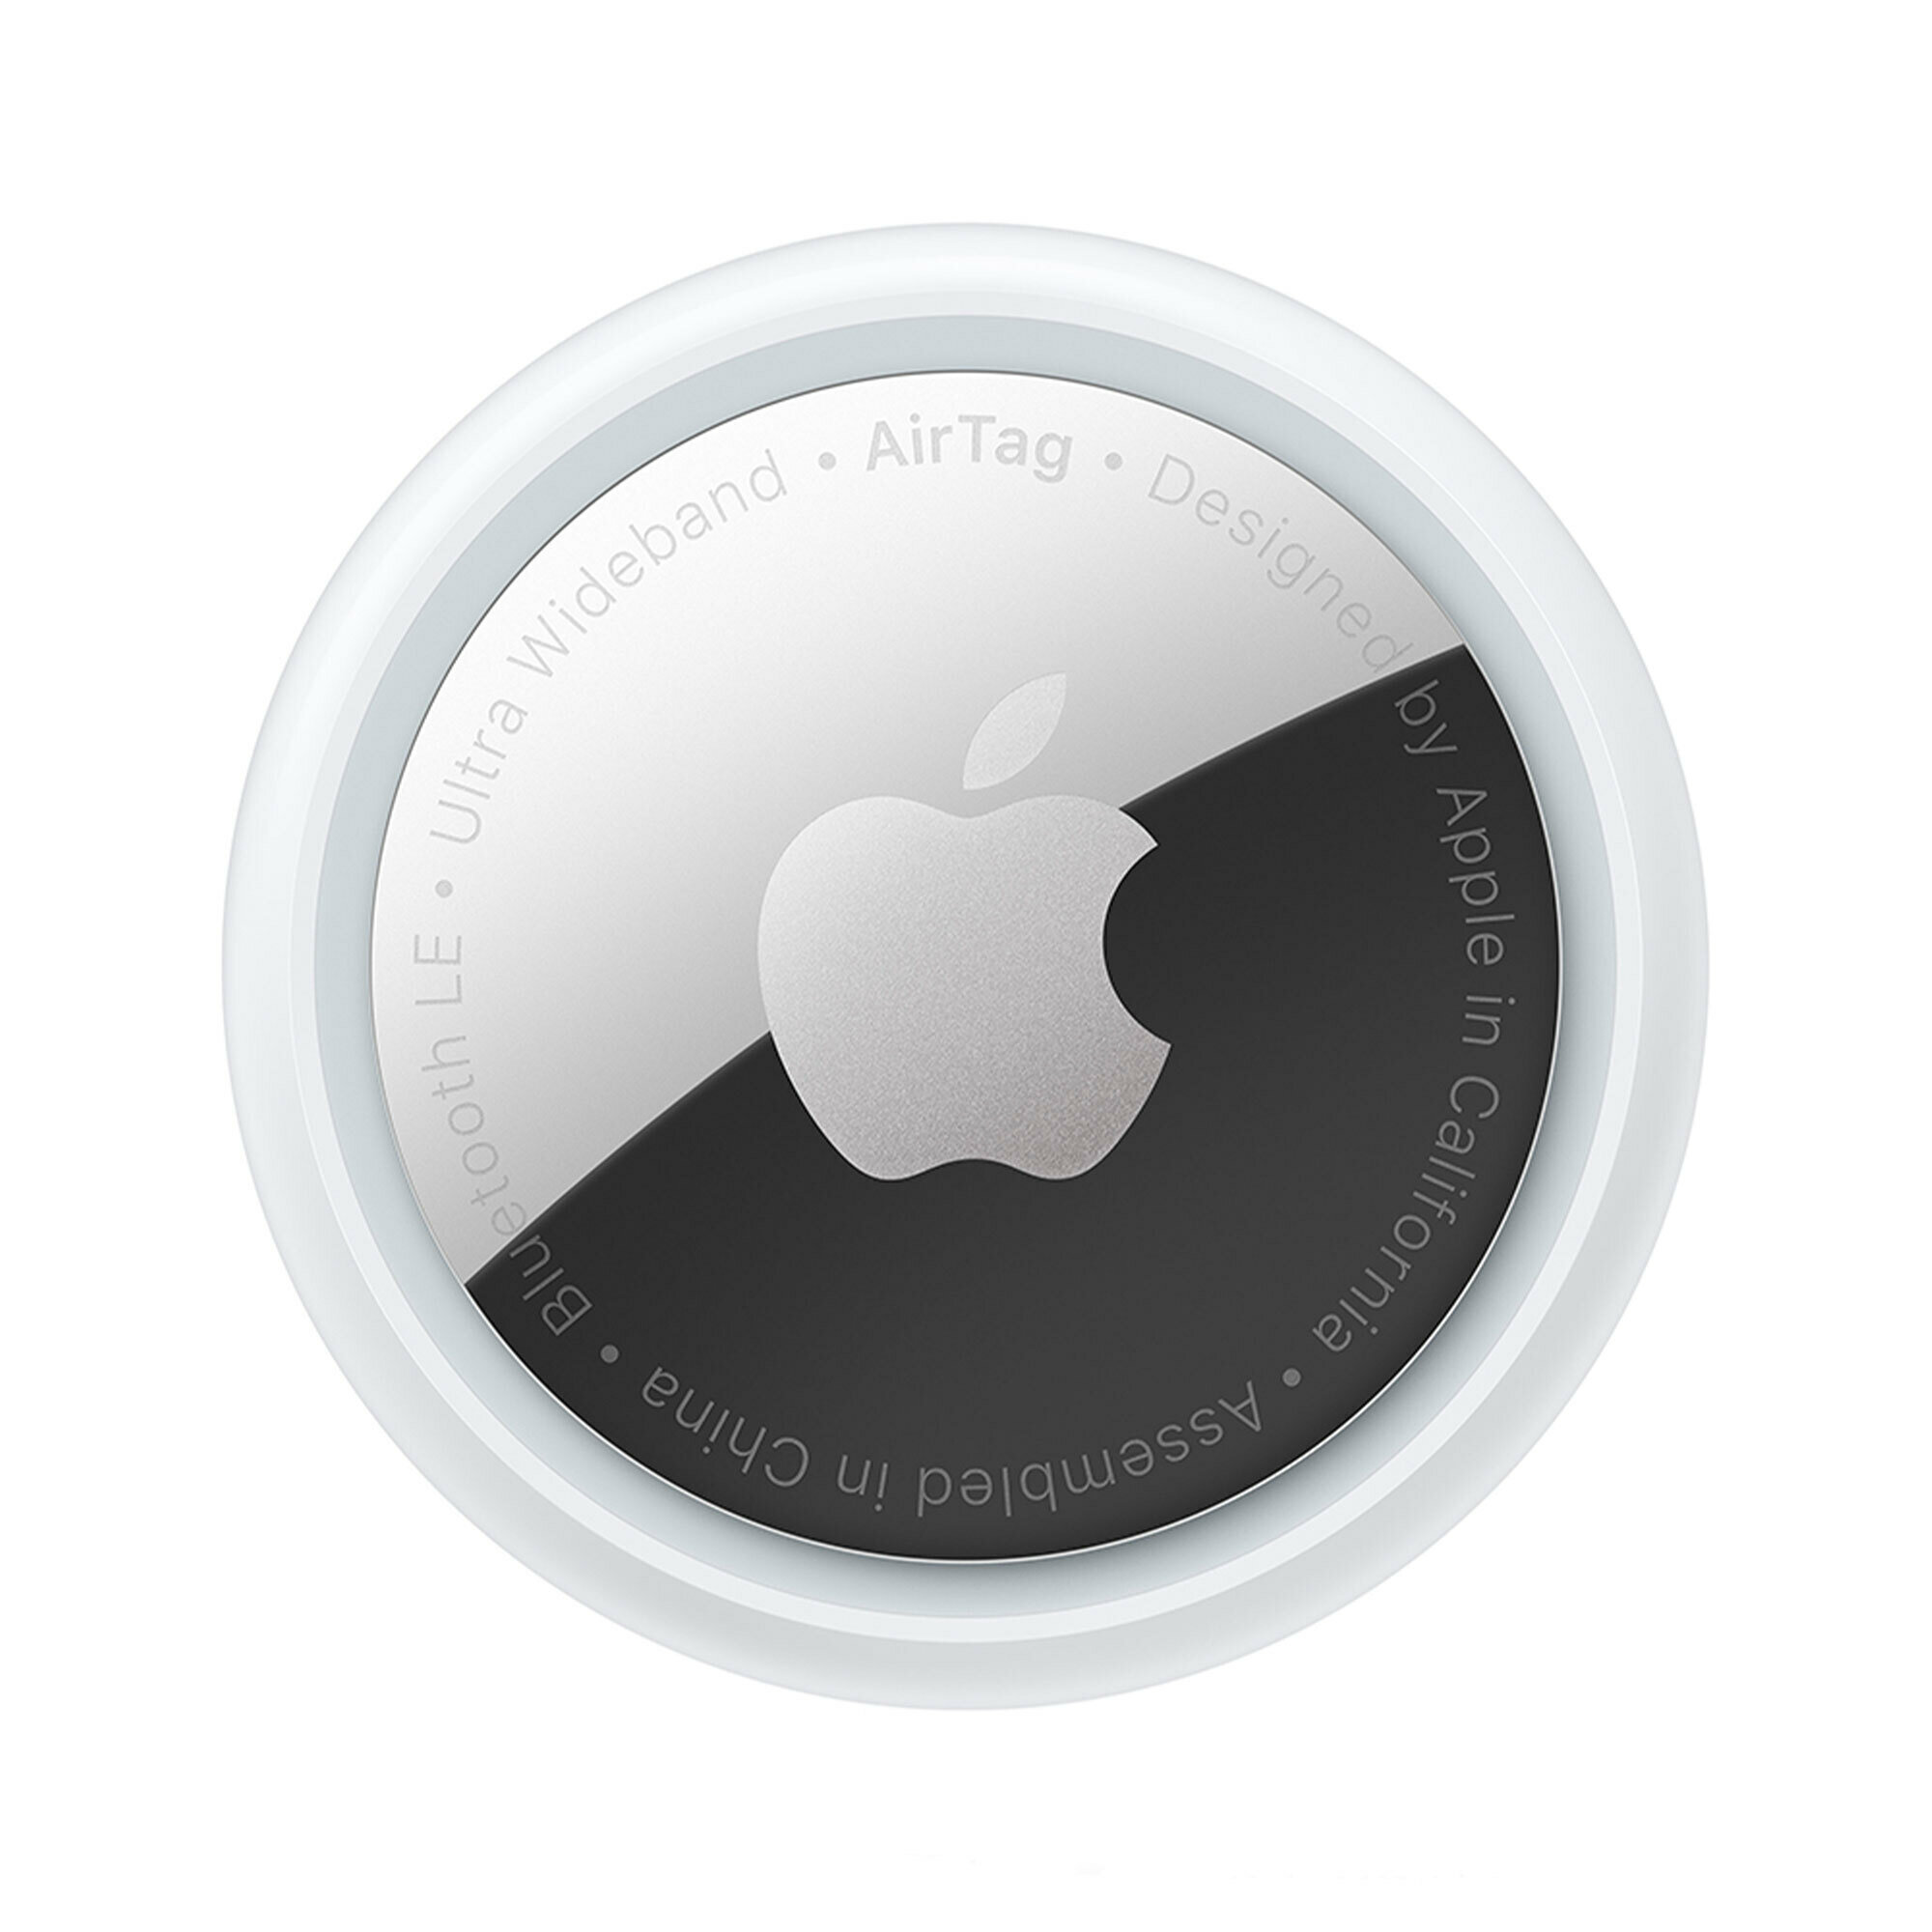 Трекер Apple AirTag модели iPhone и iPod touch с iOS 145 или новее; модели iPad с iPadOS 145 или новее 1  из упаковки с 4 белый/серебристый